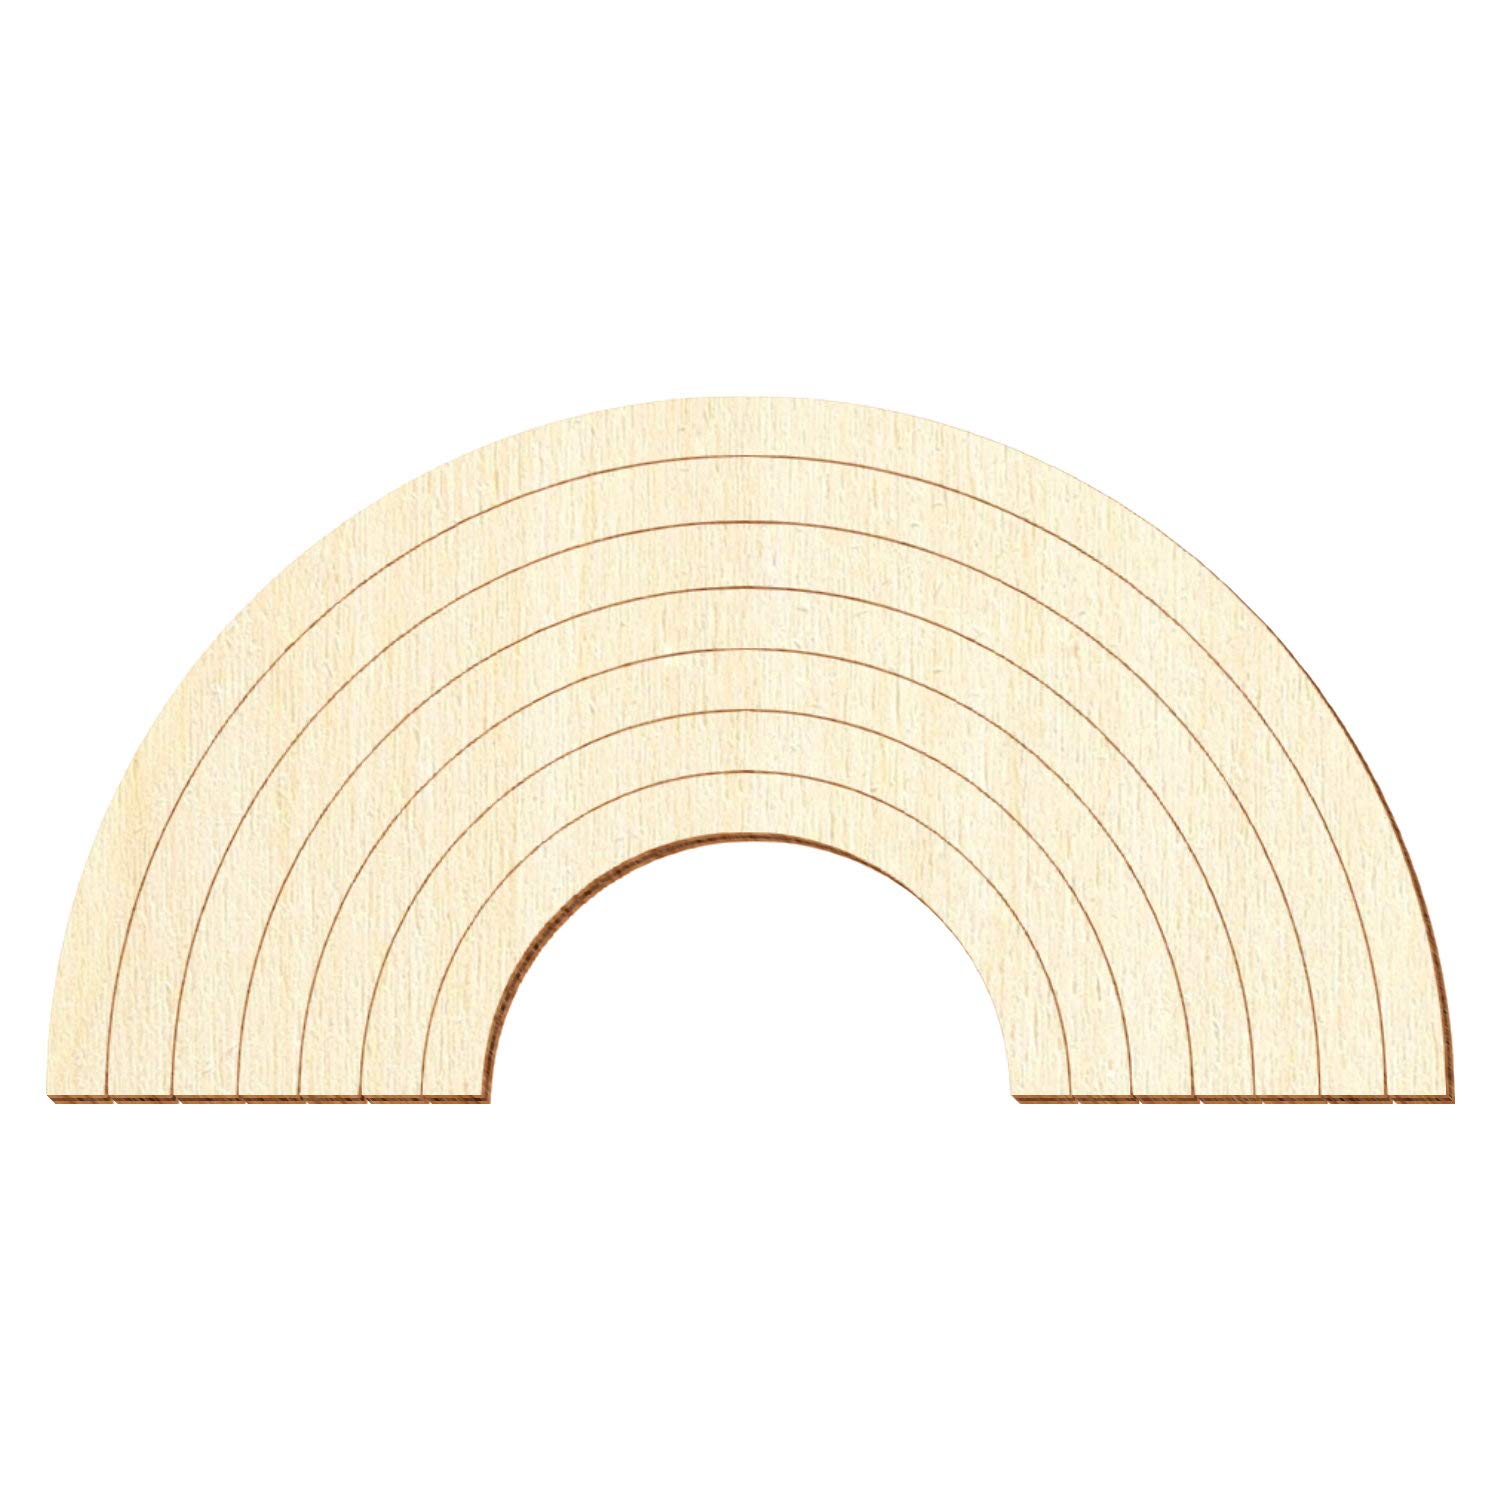 Holz Regenbogen V1 - Deko Basteln 8-50cm, Pack mit:10 Stück, Breite:14cm breit